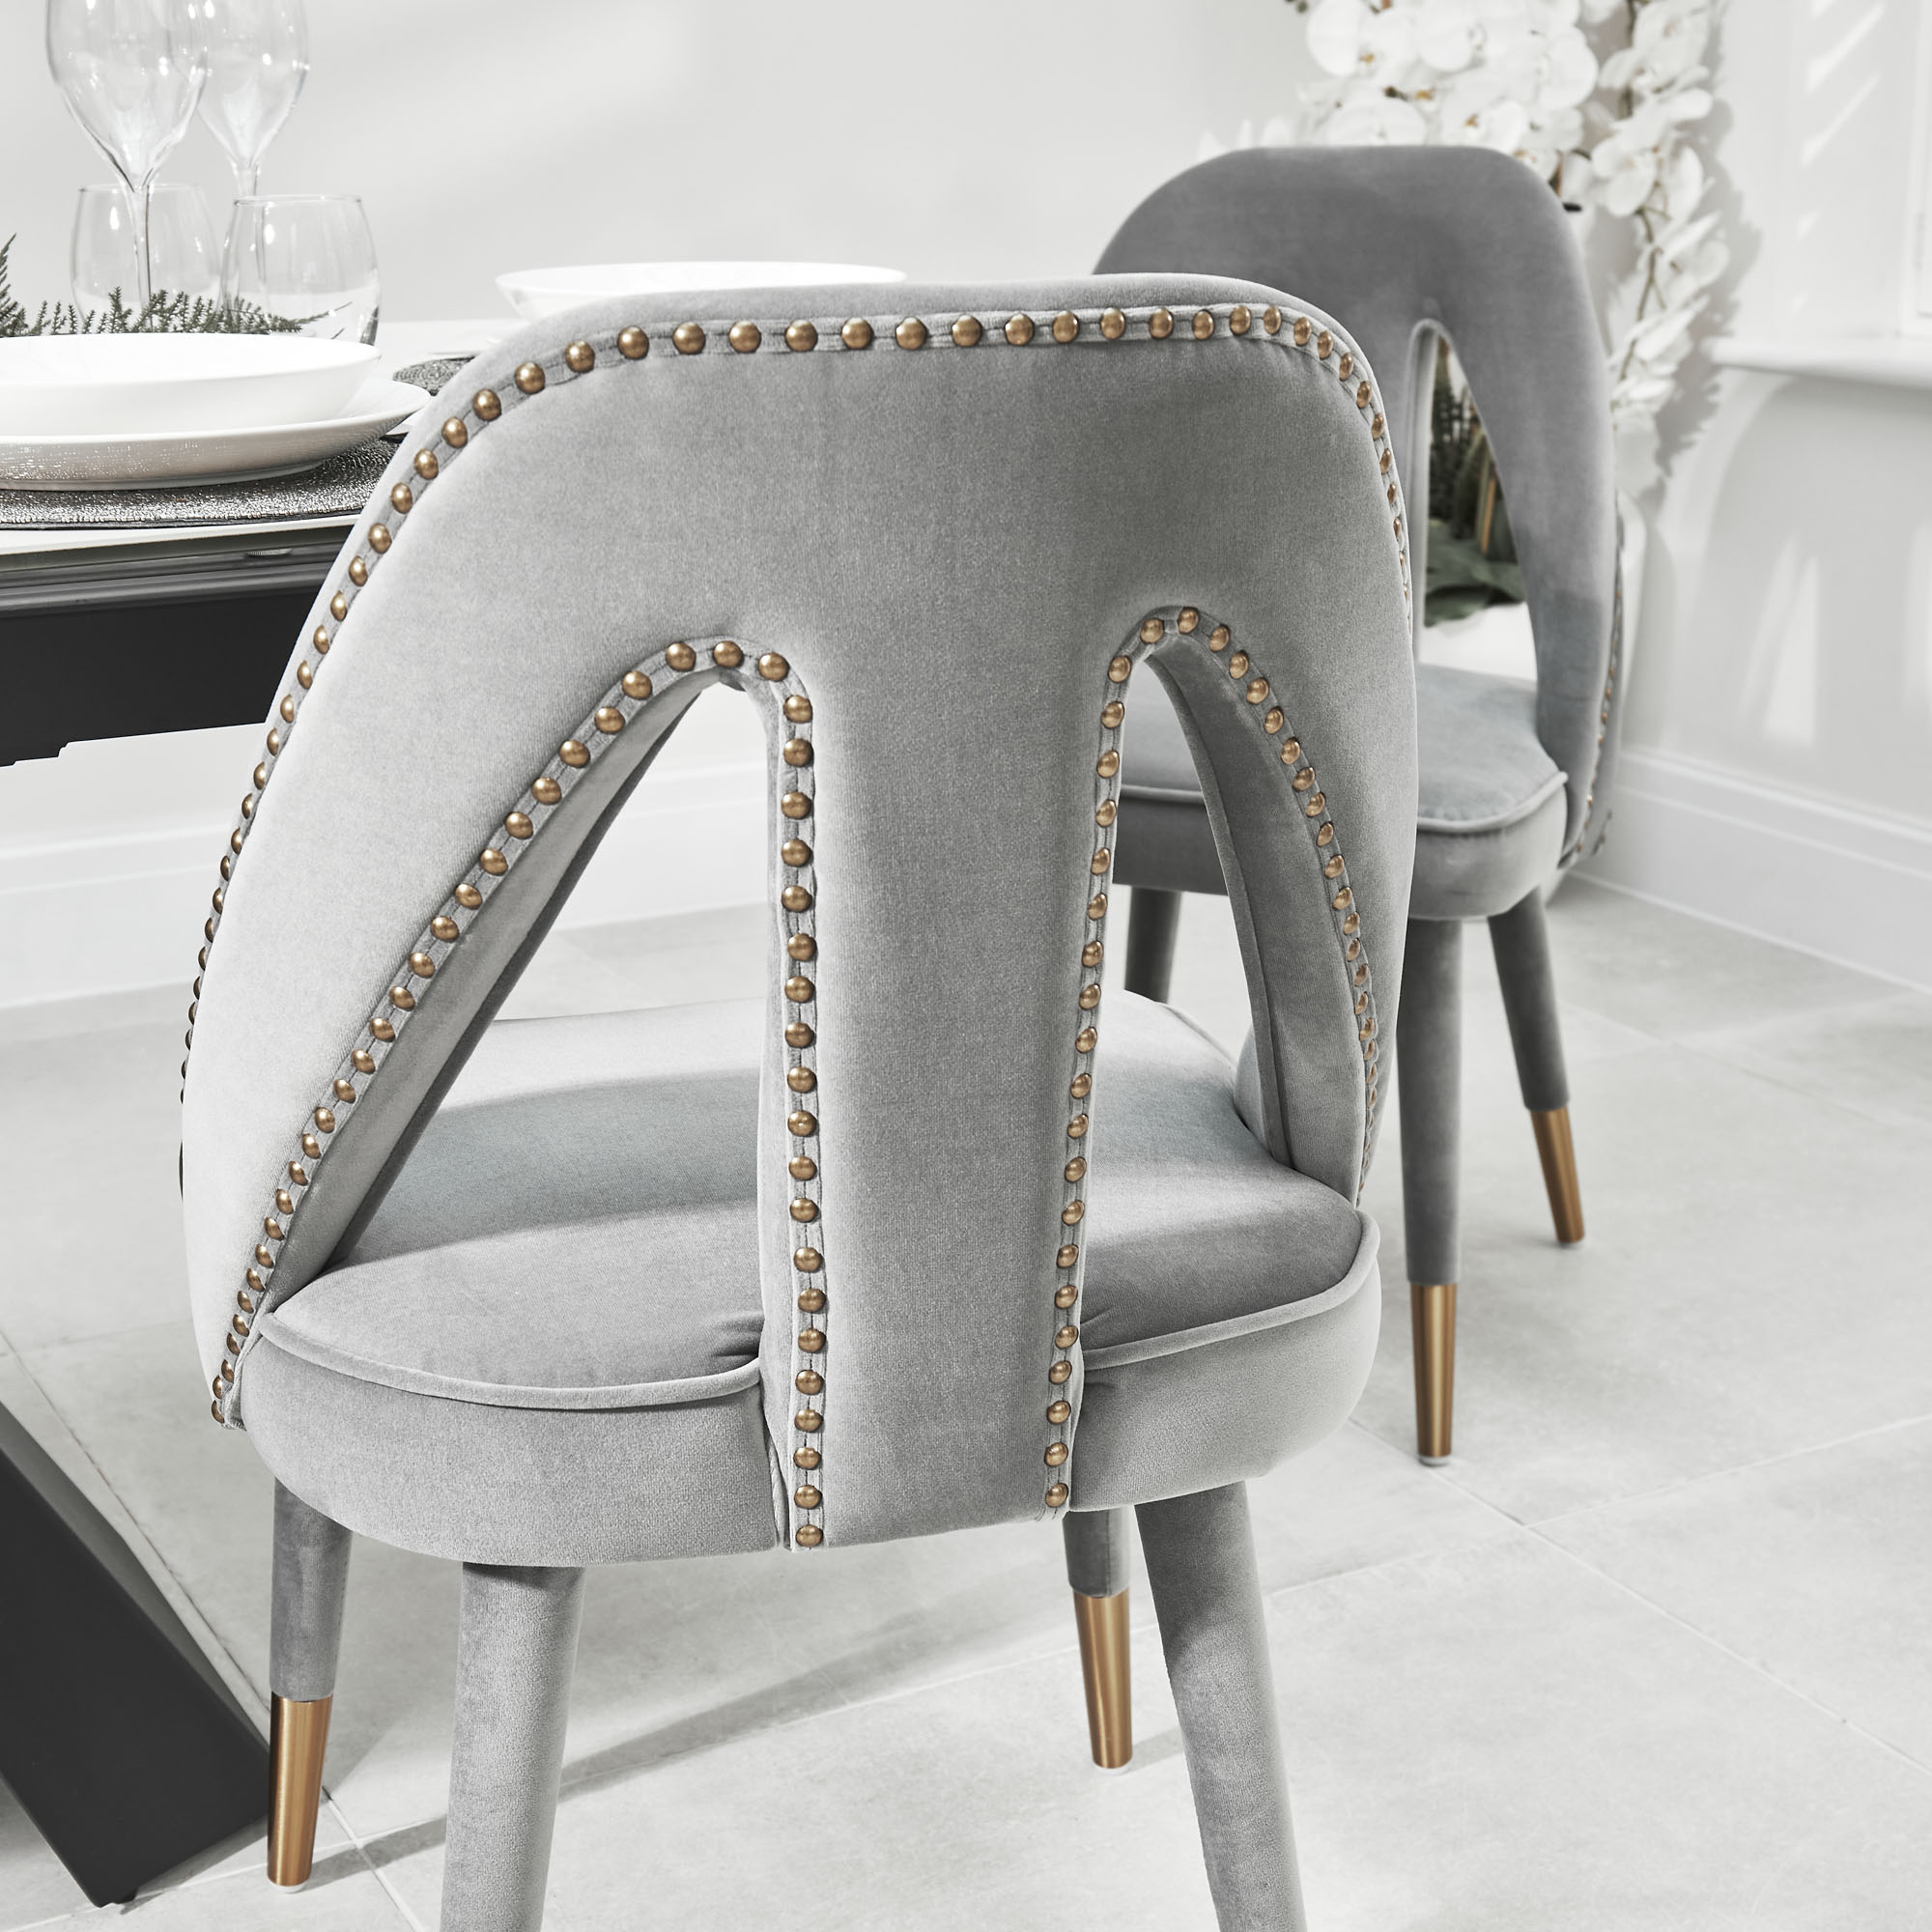 Alexandra Grey Velvet Dining Chair